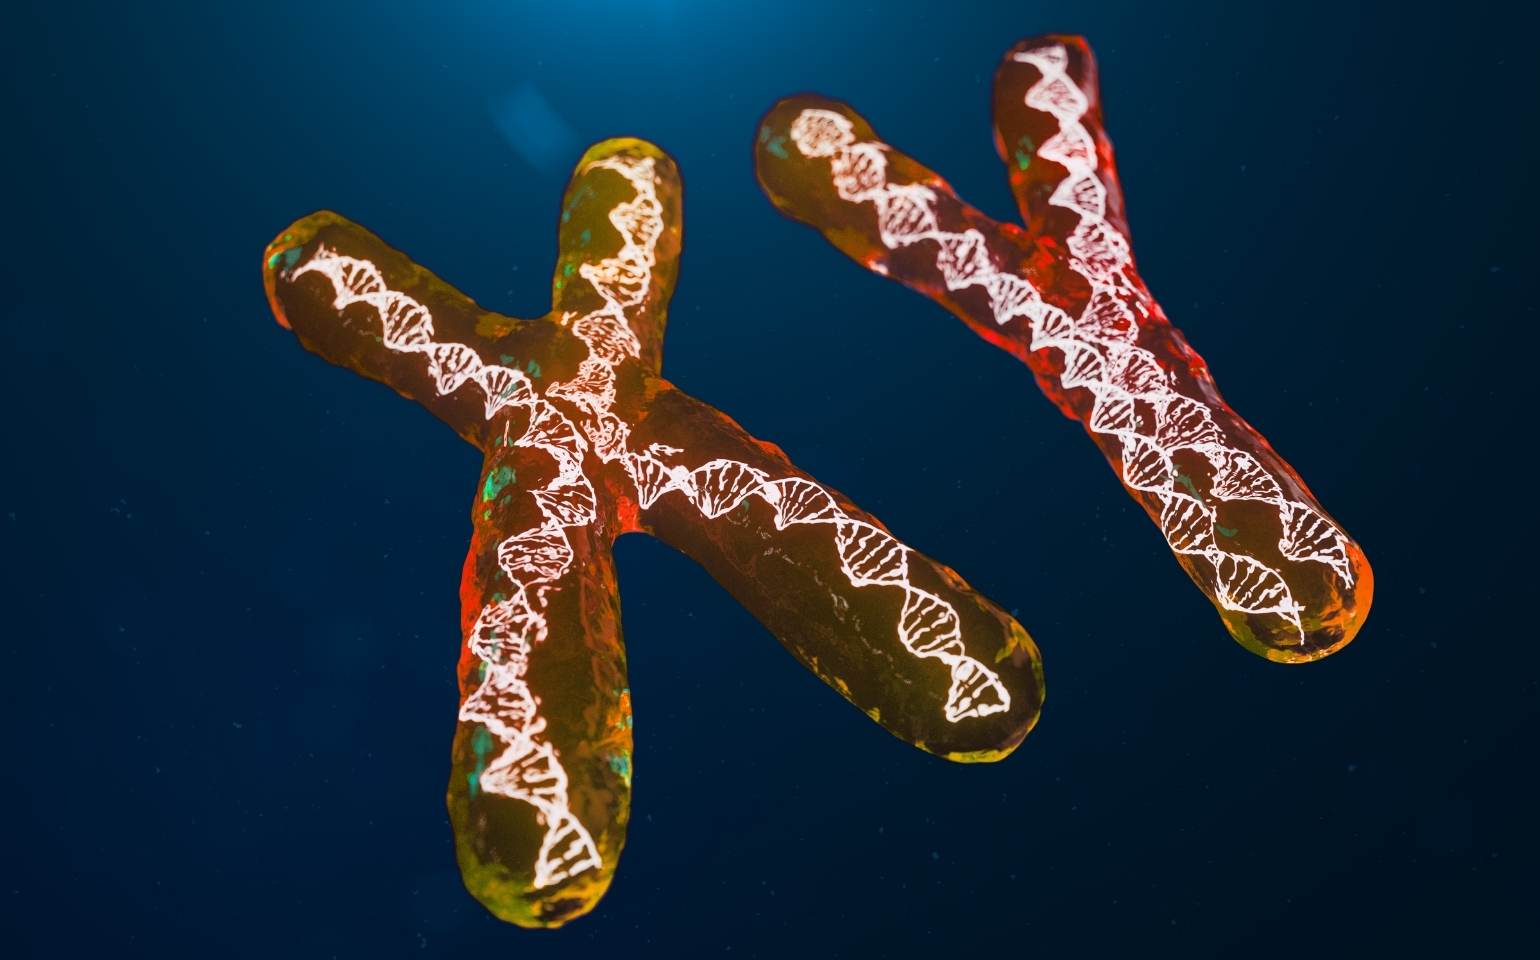 genetica dna cromossomos X Y sindrome vexas